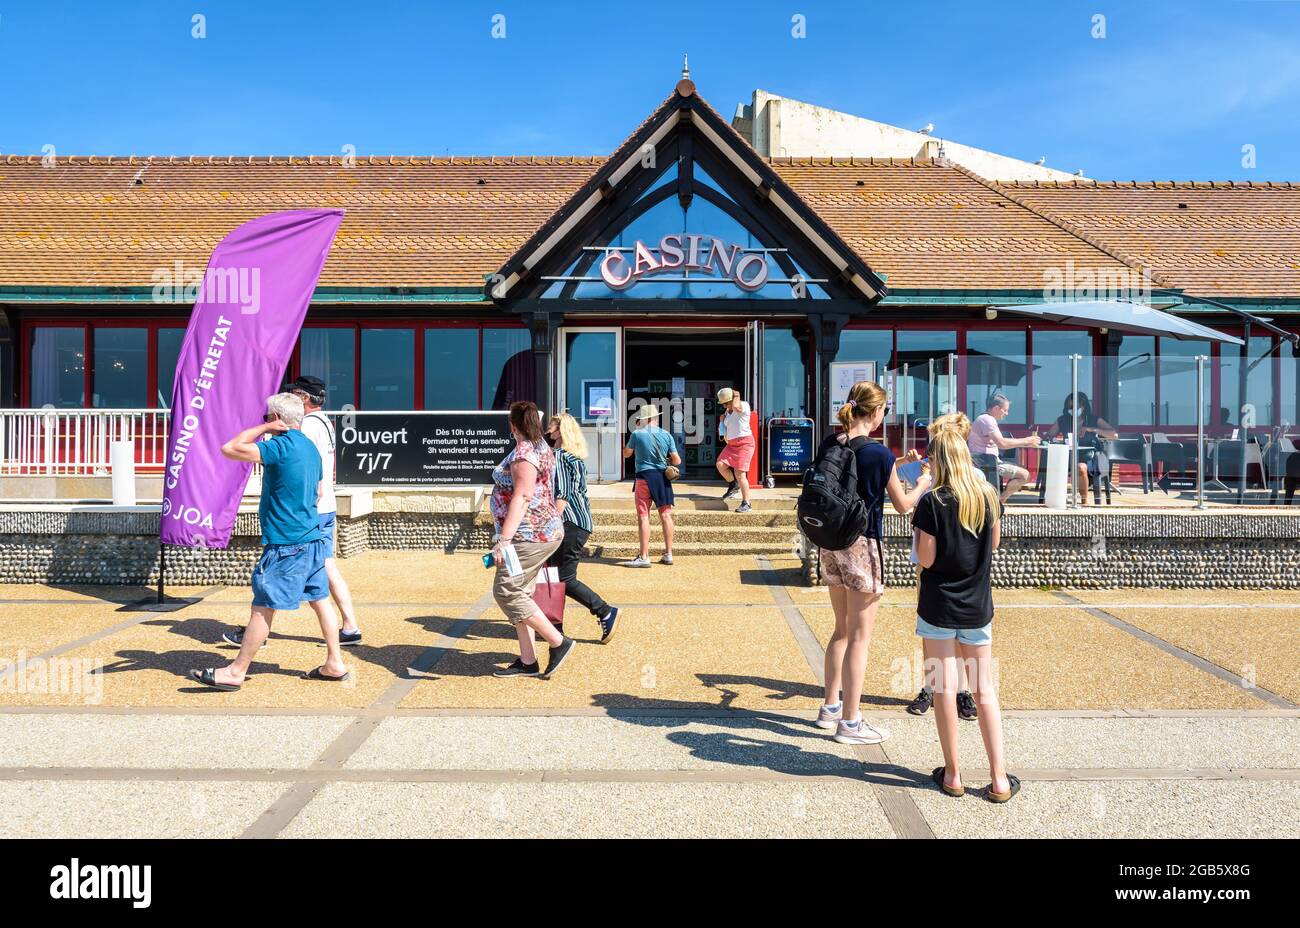 Touristen bummeln in der Familie oder zwischen Freunden entlang der Strandpromenade in Etretat, Frankreich, und gehen an einem sonnigen Tag am Eingang des Casinos vorbei. Stockfoto